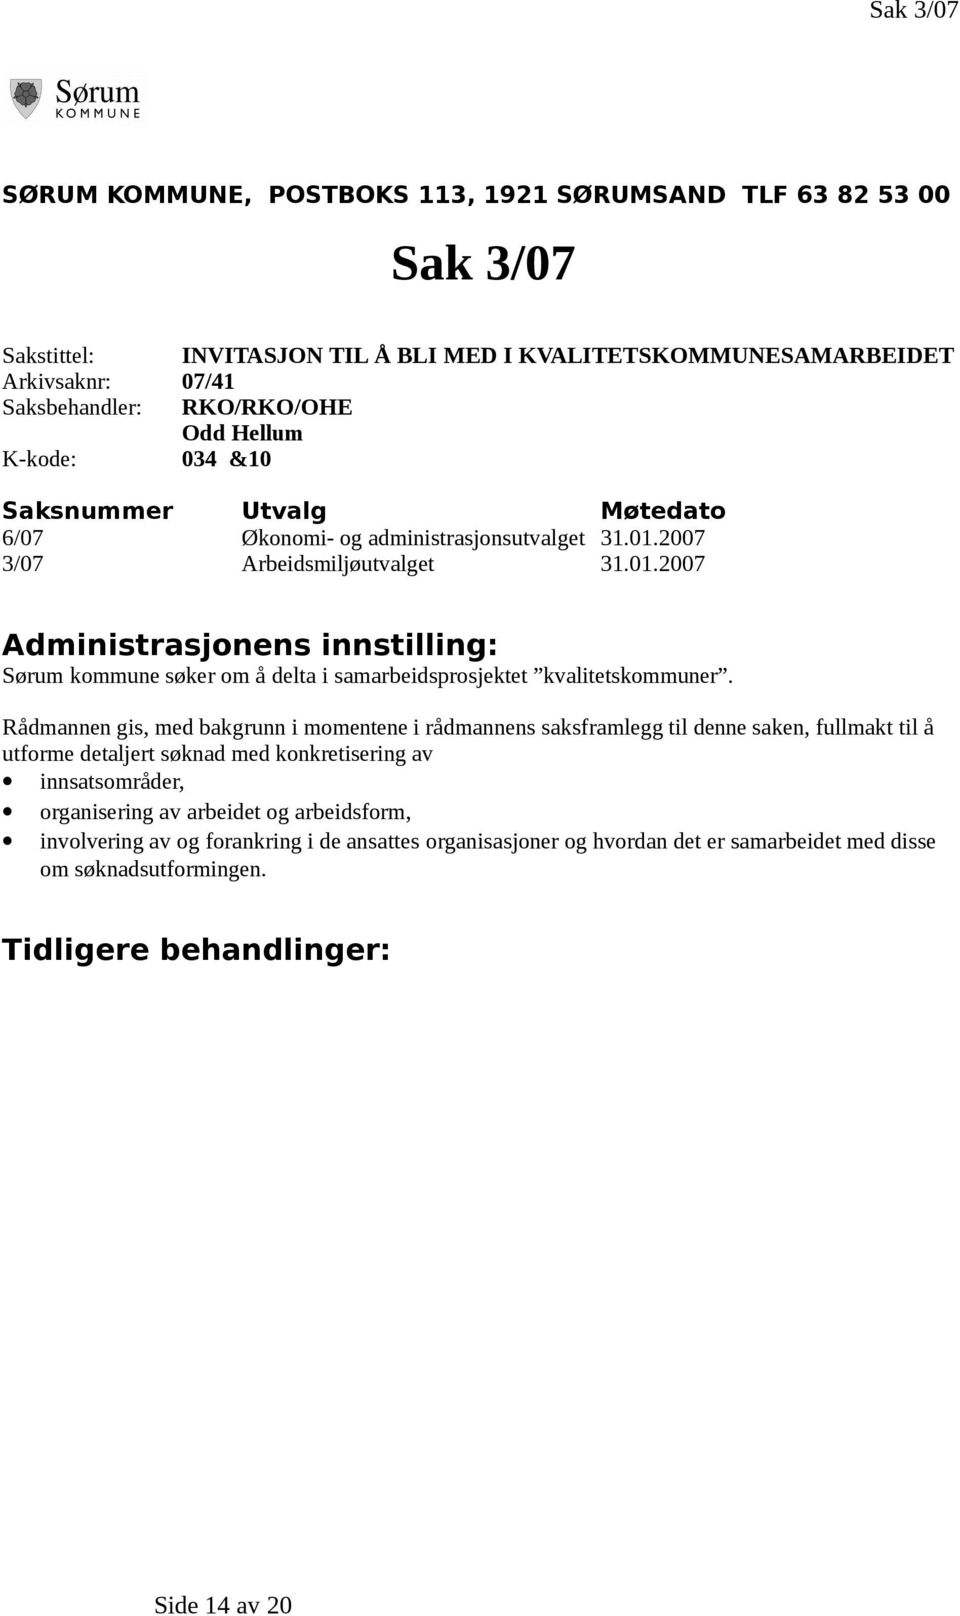 2007 3/07 Arbeidsmiljøutvalget 31.01.2007 Administrasjonens innstilling: Sørum kommune søker om å delta i samarbeidsprosjektet kvalitetskommuner.